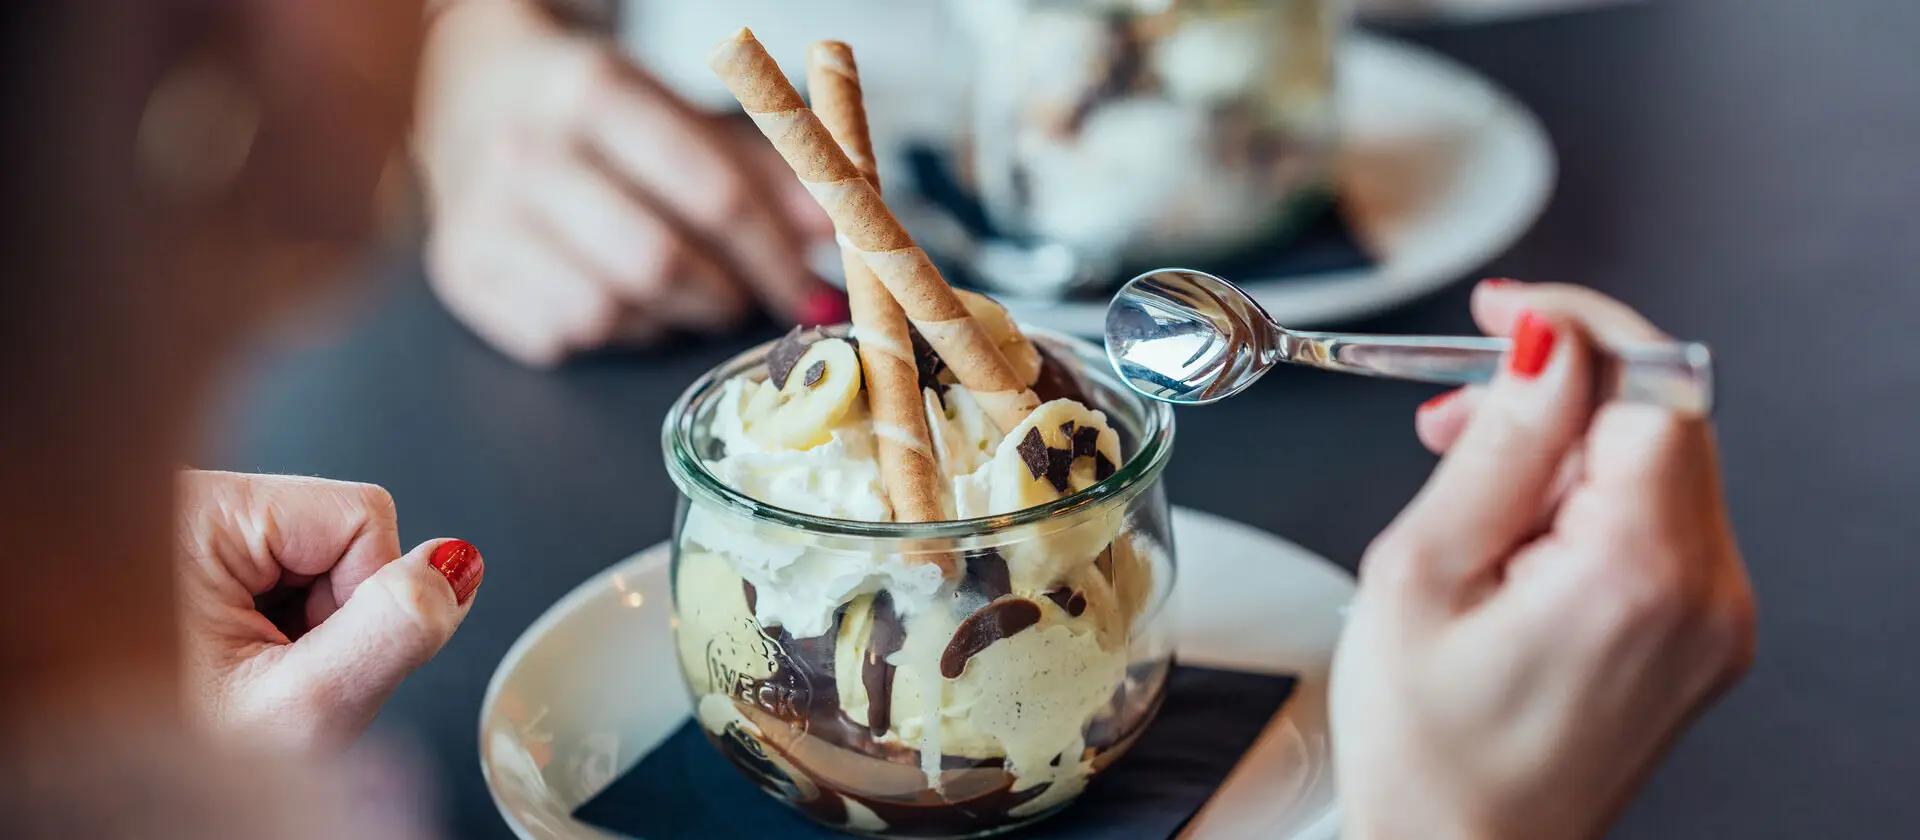 Ein Eisbecher mit Schokolade, Bananenstücken und Sahne in einer Glasschüssel serviert.